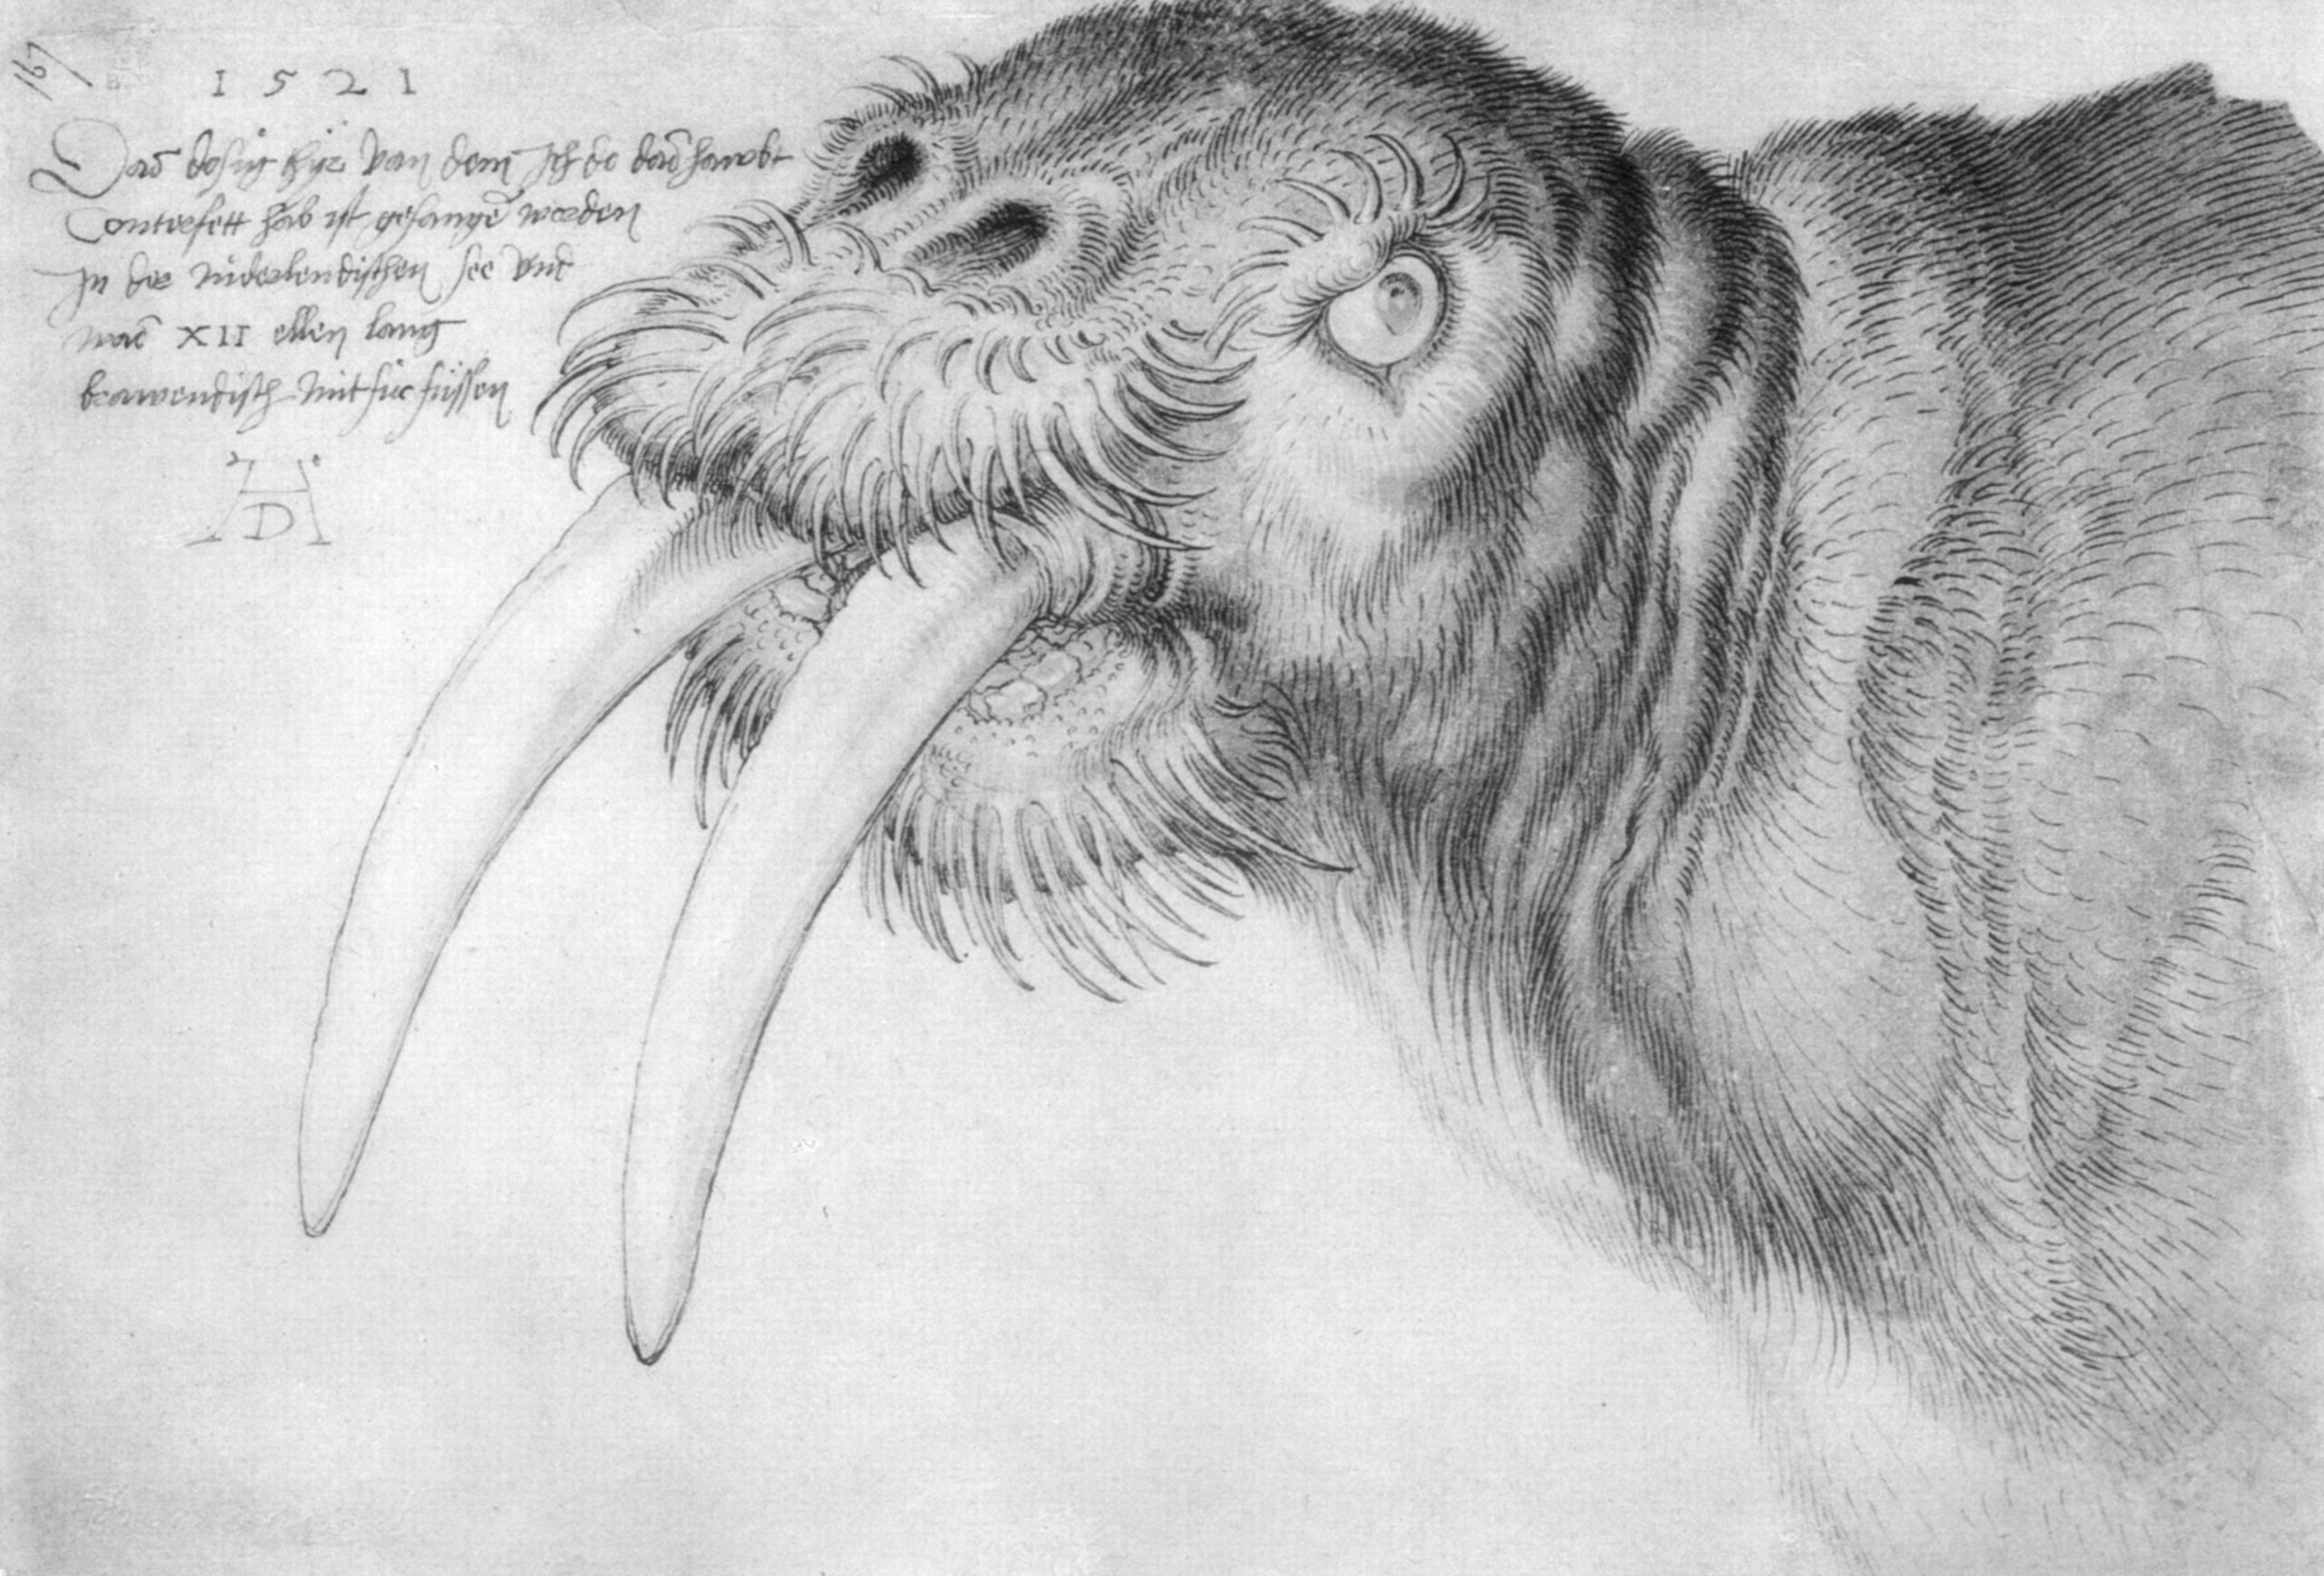 Head of a Walrus by Albrecht Dürer - 1521 - 21.1 x 31.2 cm British Museum